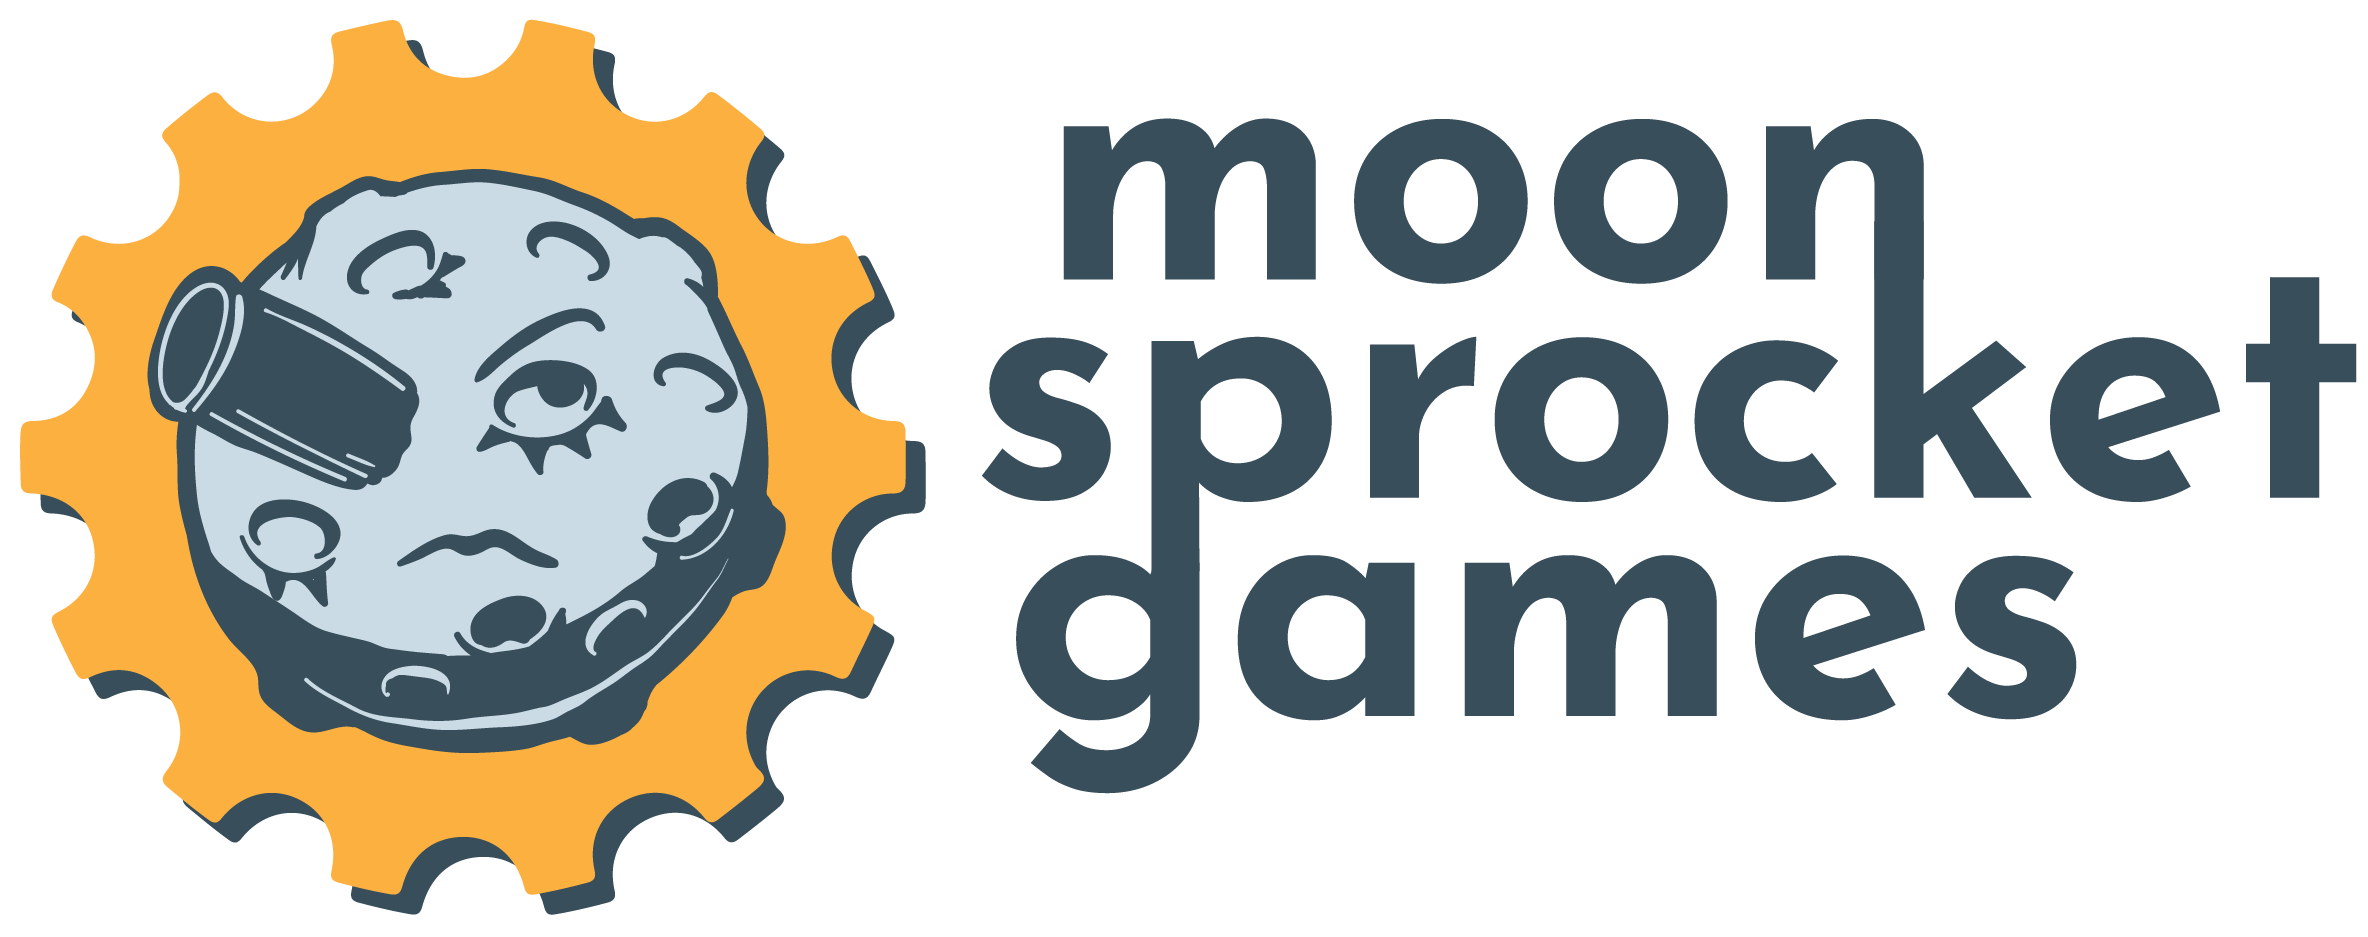 Moonsprocket Games